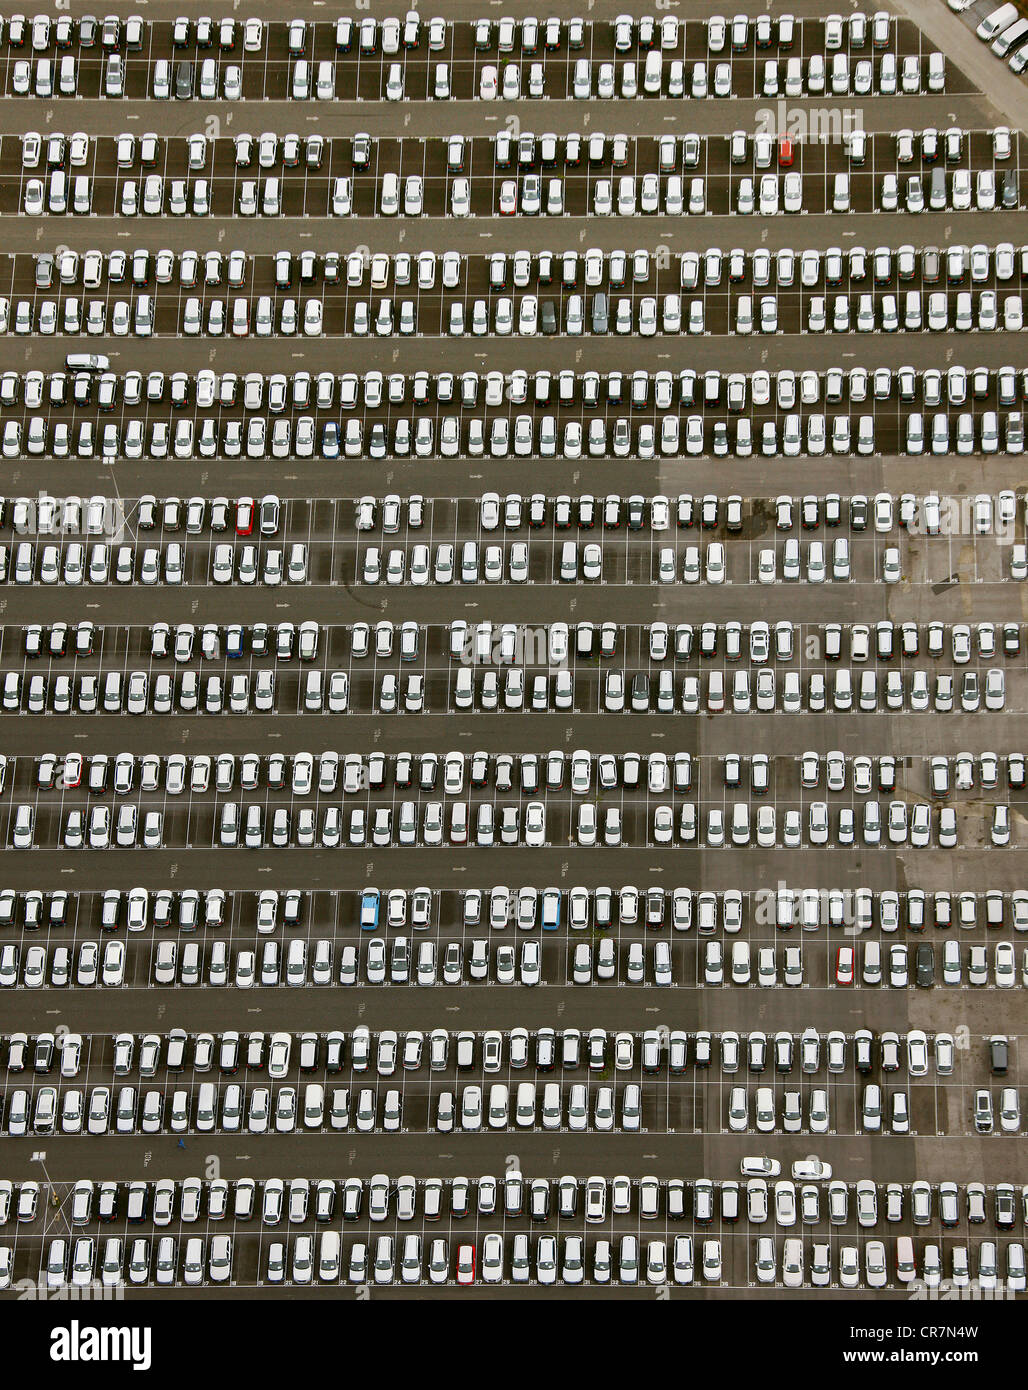 Antenne zu sehen, Stauderstrasse Auto Lagerung und Umgebung, Essen, Ruhr Gebiet, North Rhine-Westphalia, Deutschland, Europa Stockfoto